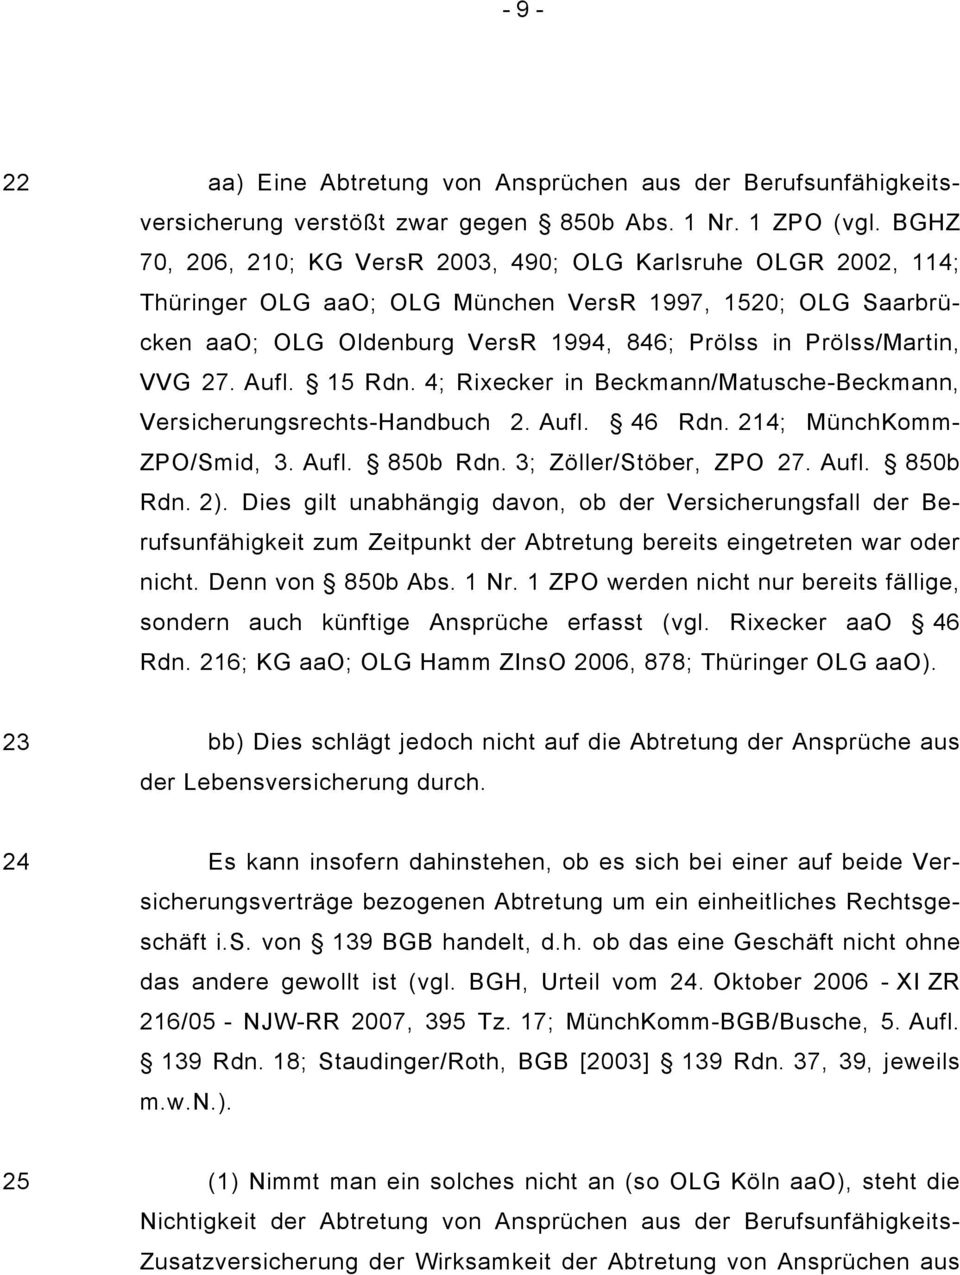 27. Aufl. 15 Rdn. 4; Rixecker in Beckmann/Matusche-Beckmann, Versicherungsrechts-Handbuch 2. Aufl. 46 Rdn. 214; MünchKomm- ZPO/Smid, 3. Aufl. 850b Rdn. 3; Zöller/Stöber, ZPO 27. Aufl. 850b Rdn. 2).